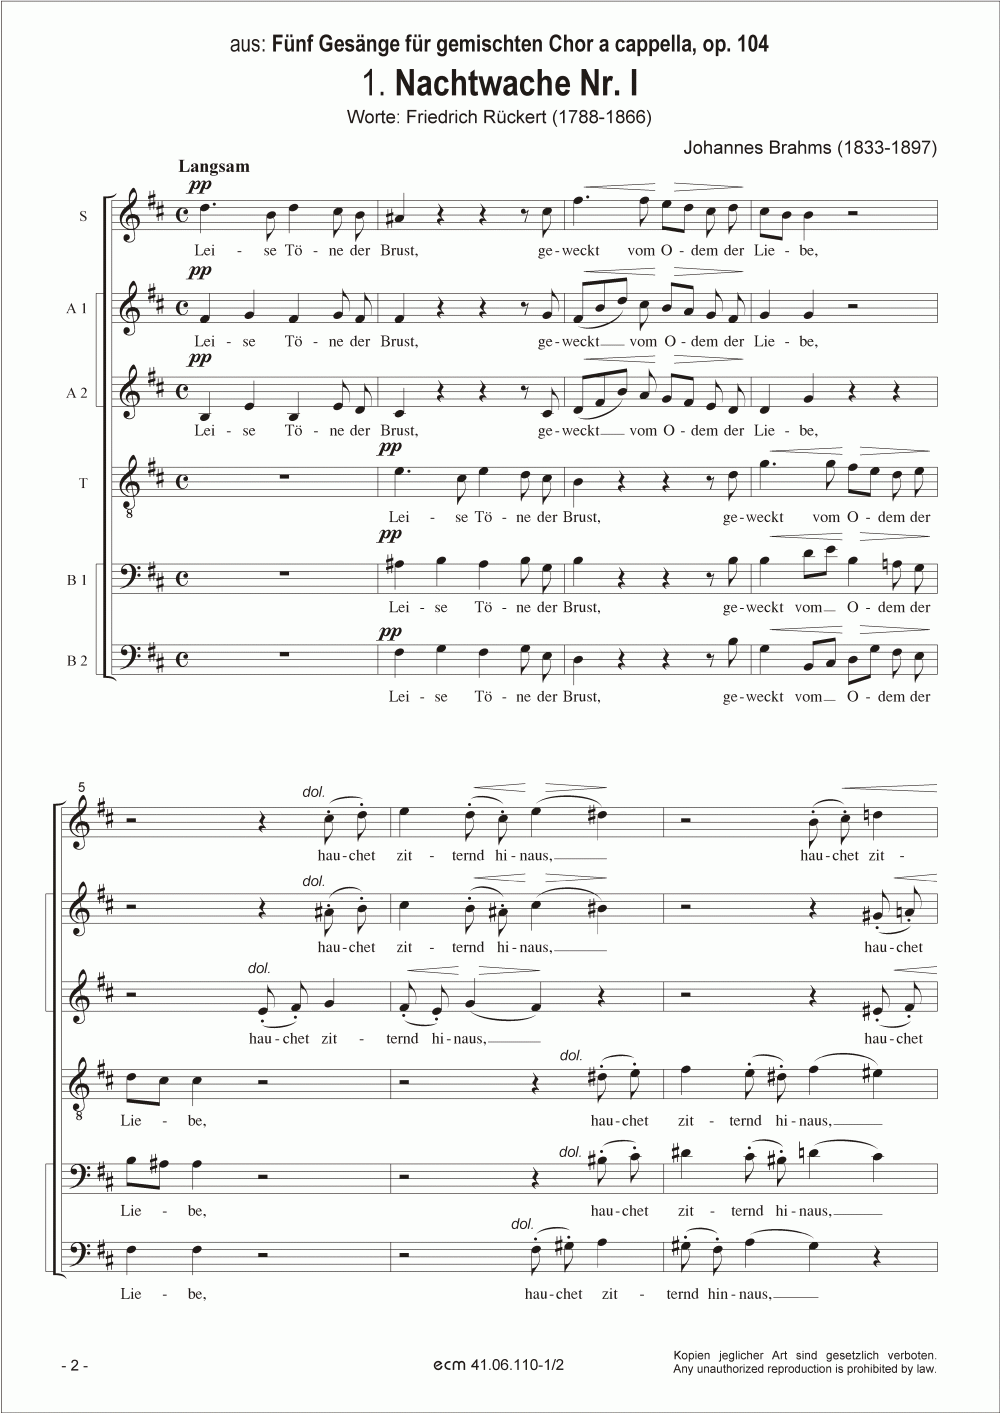 Nachtwache I und II (op. 104, No.1,2)